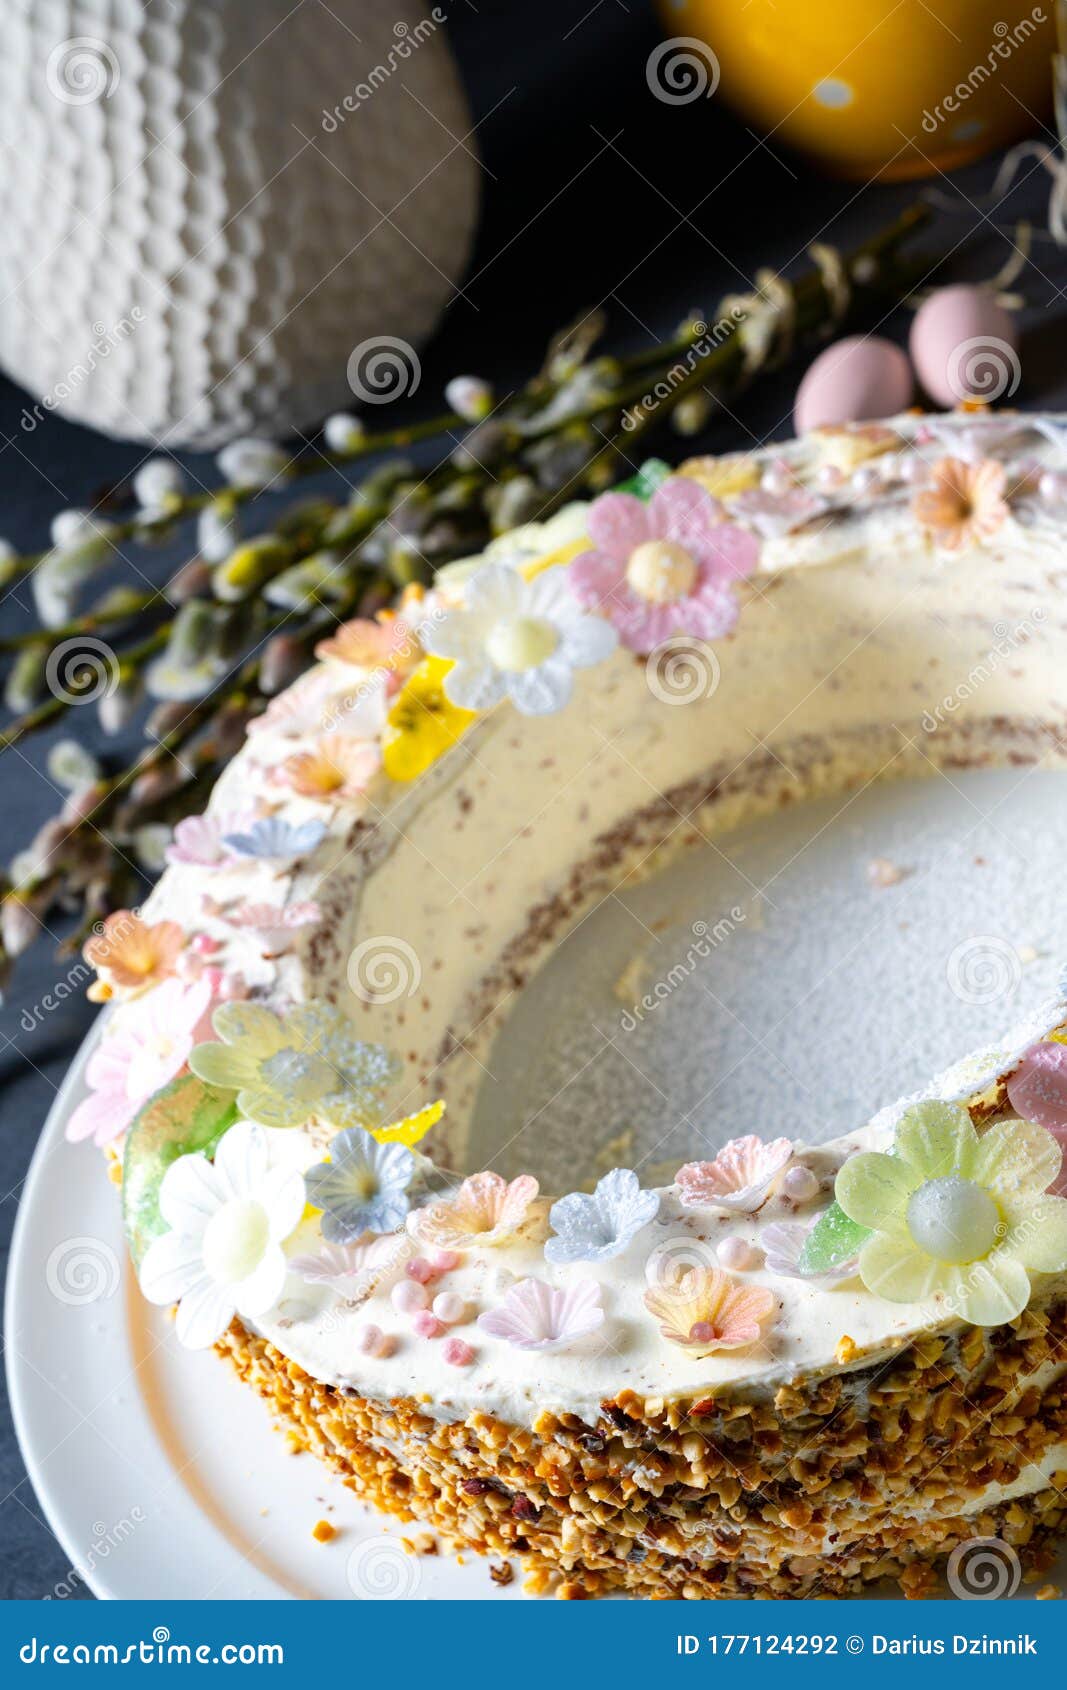 愉快的复活节杯形蛋糕 库存照片. 图片 包括有 蓝色, 欢乐, 没人, 蛋糕, 庆祝, 可口, 点心, 困厄 - 51385944